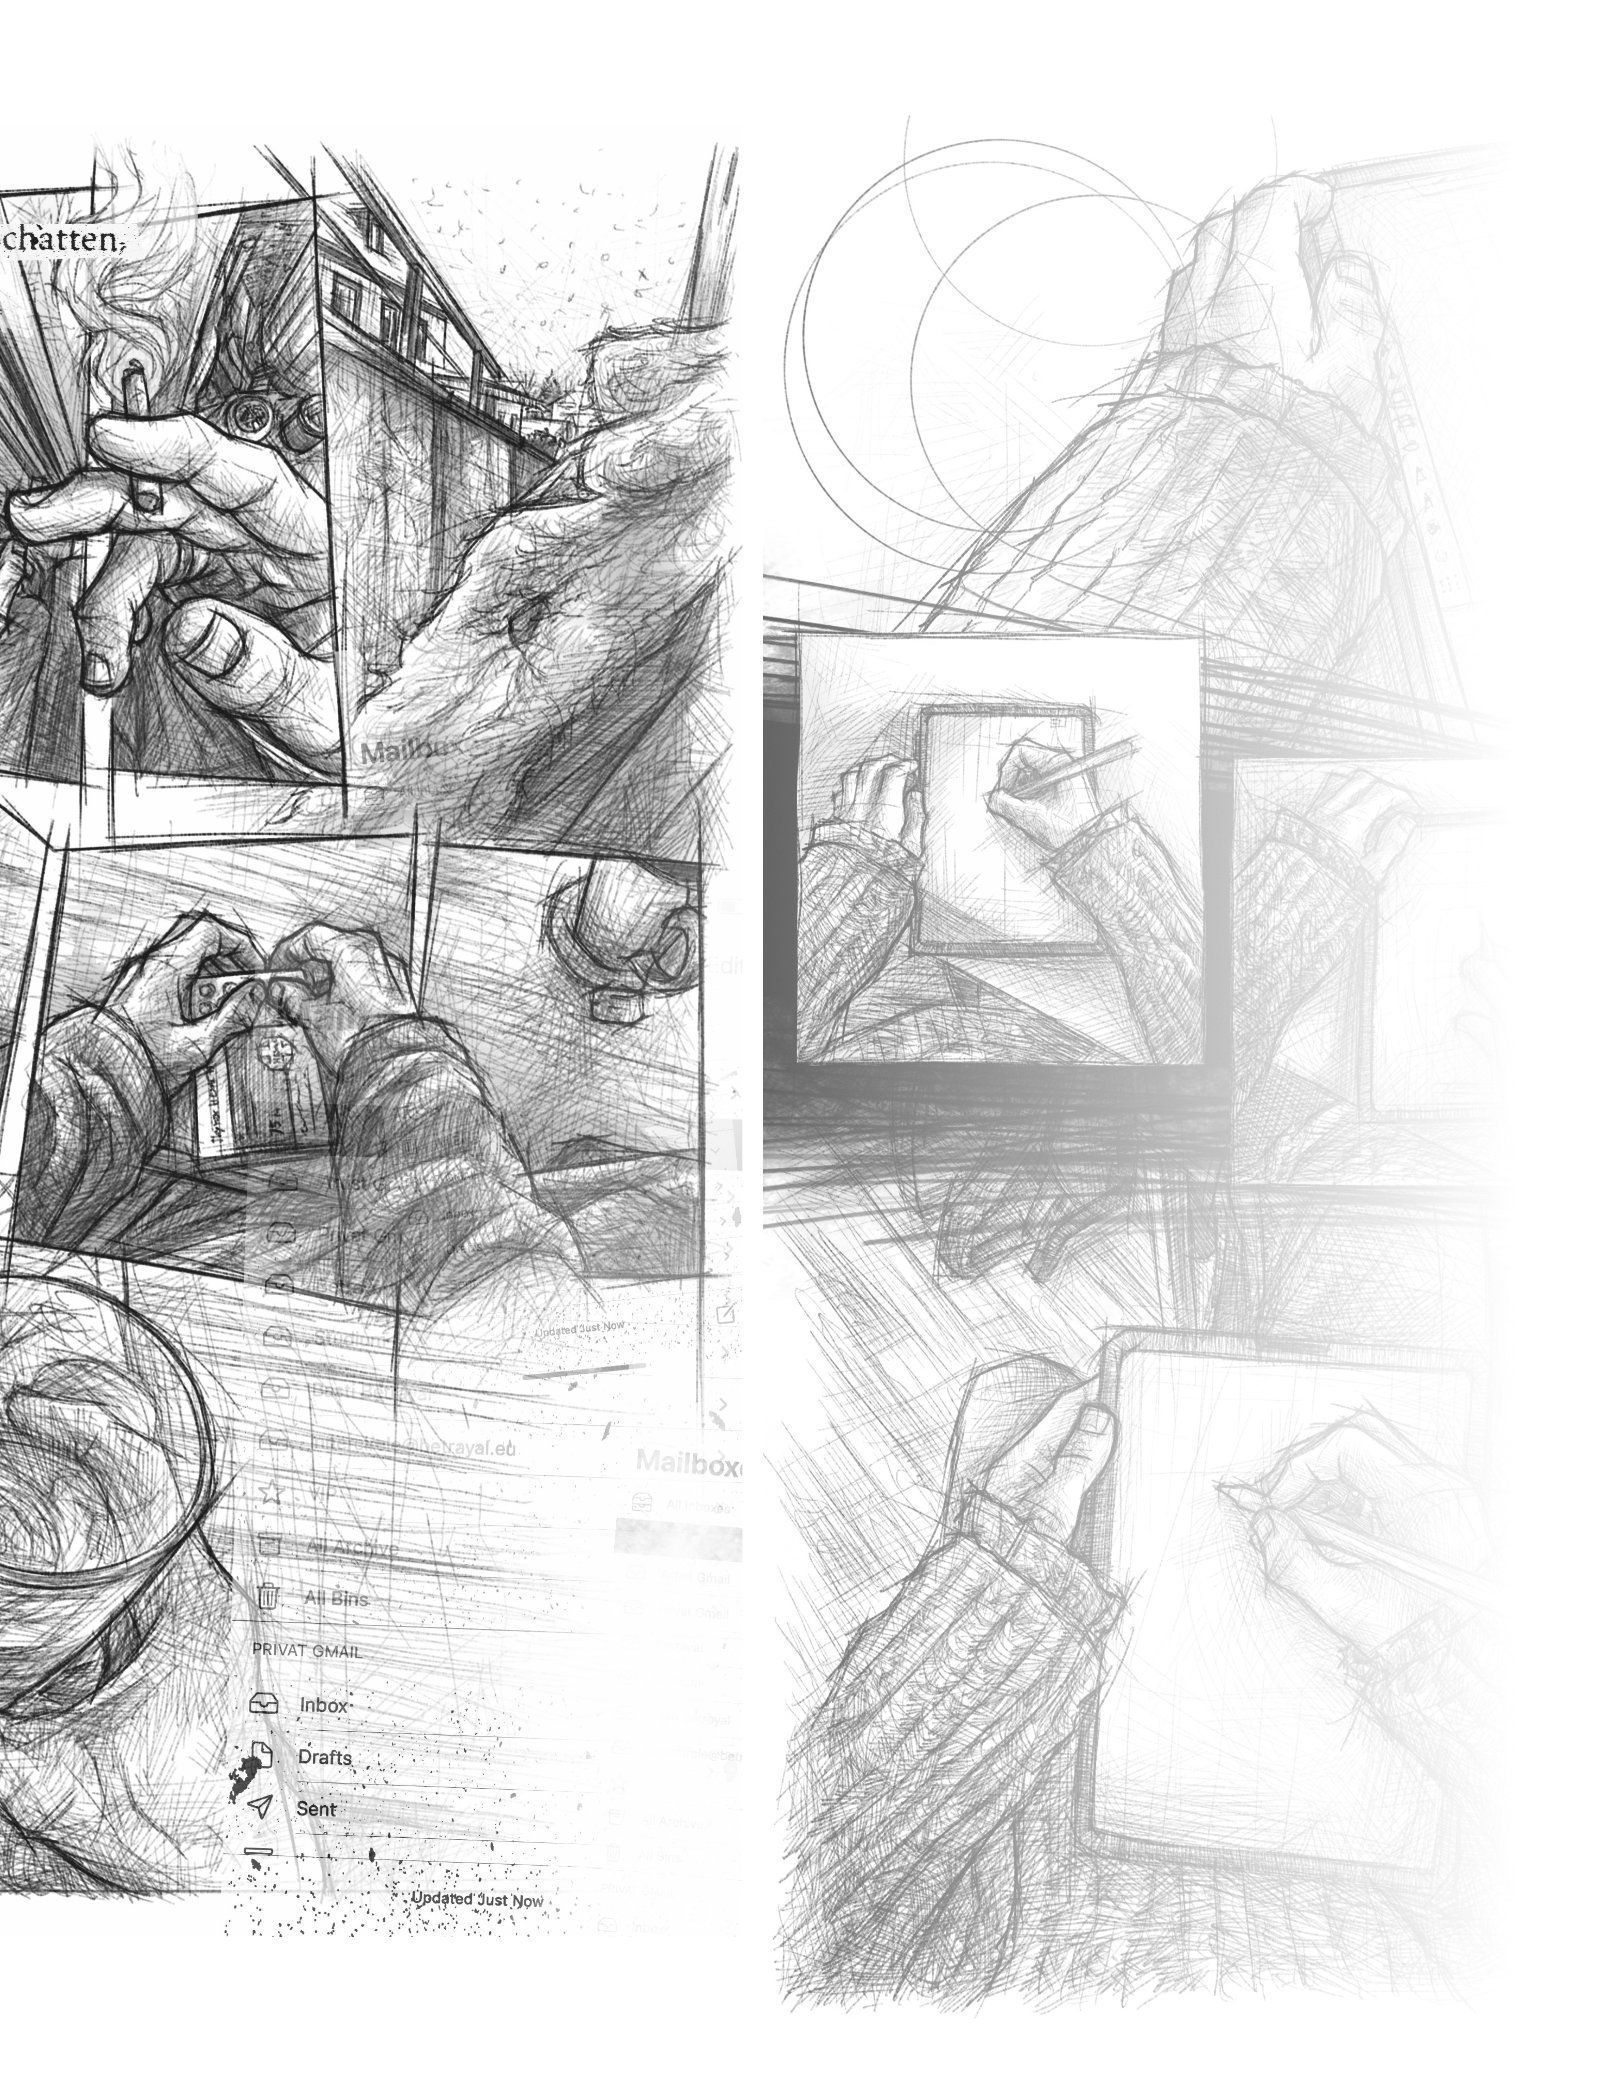 Eine Comic Seite auf der man im Skizzenstil gezeichnete Panels sieht, die aus der Egoperspektive zeigen, wie eine Person die erste Zigarette am morgen raucht